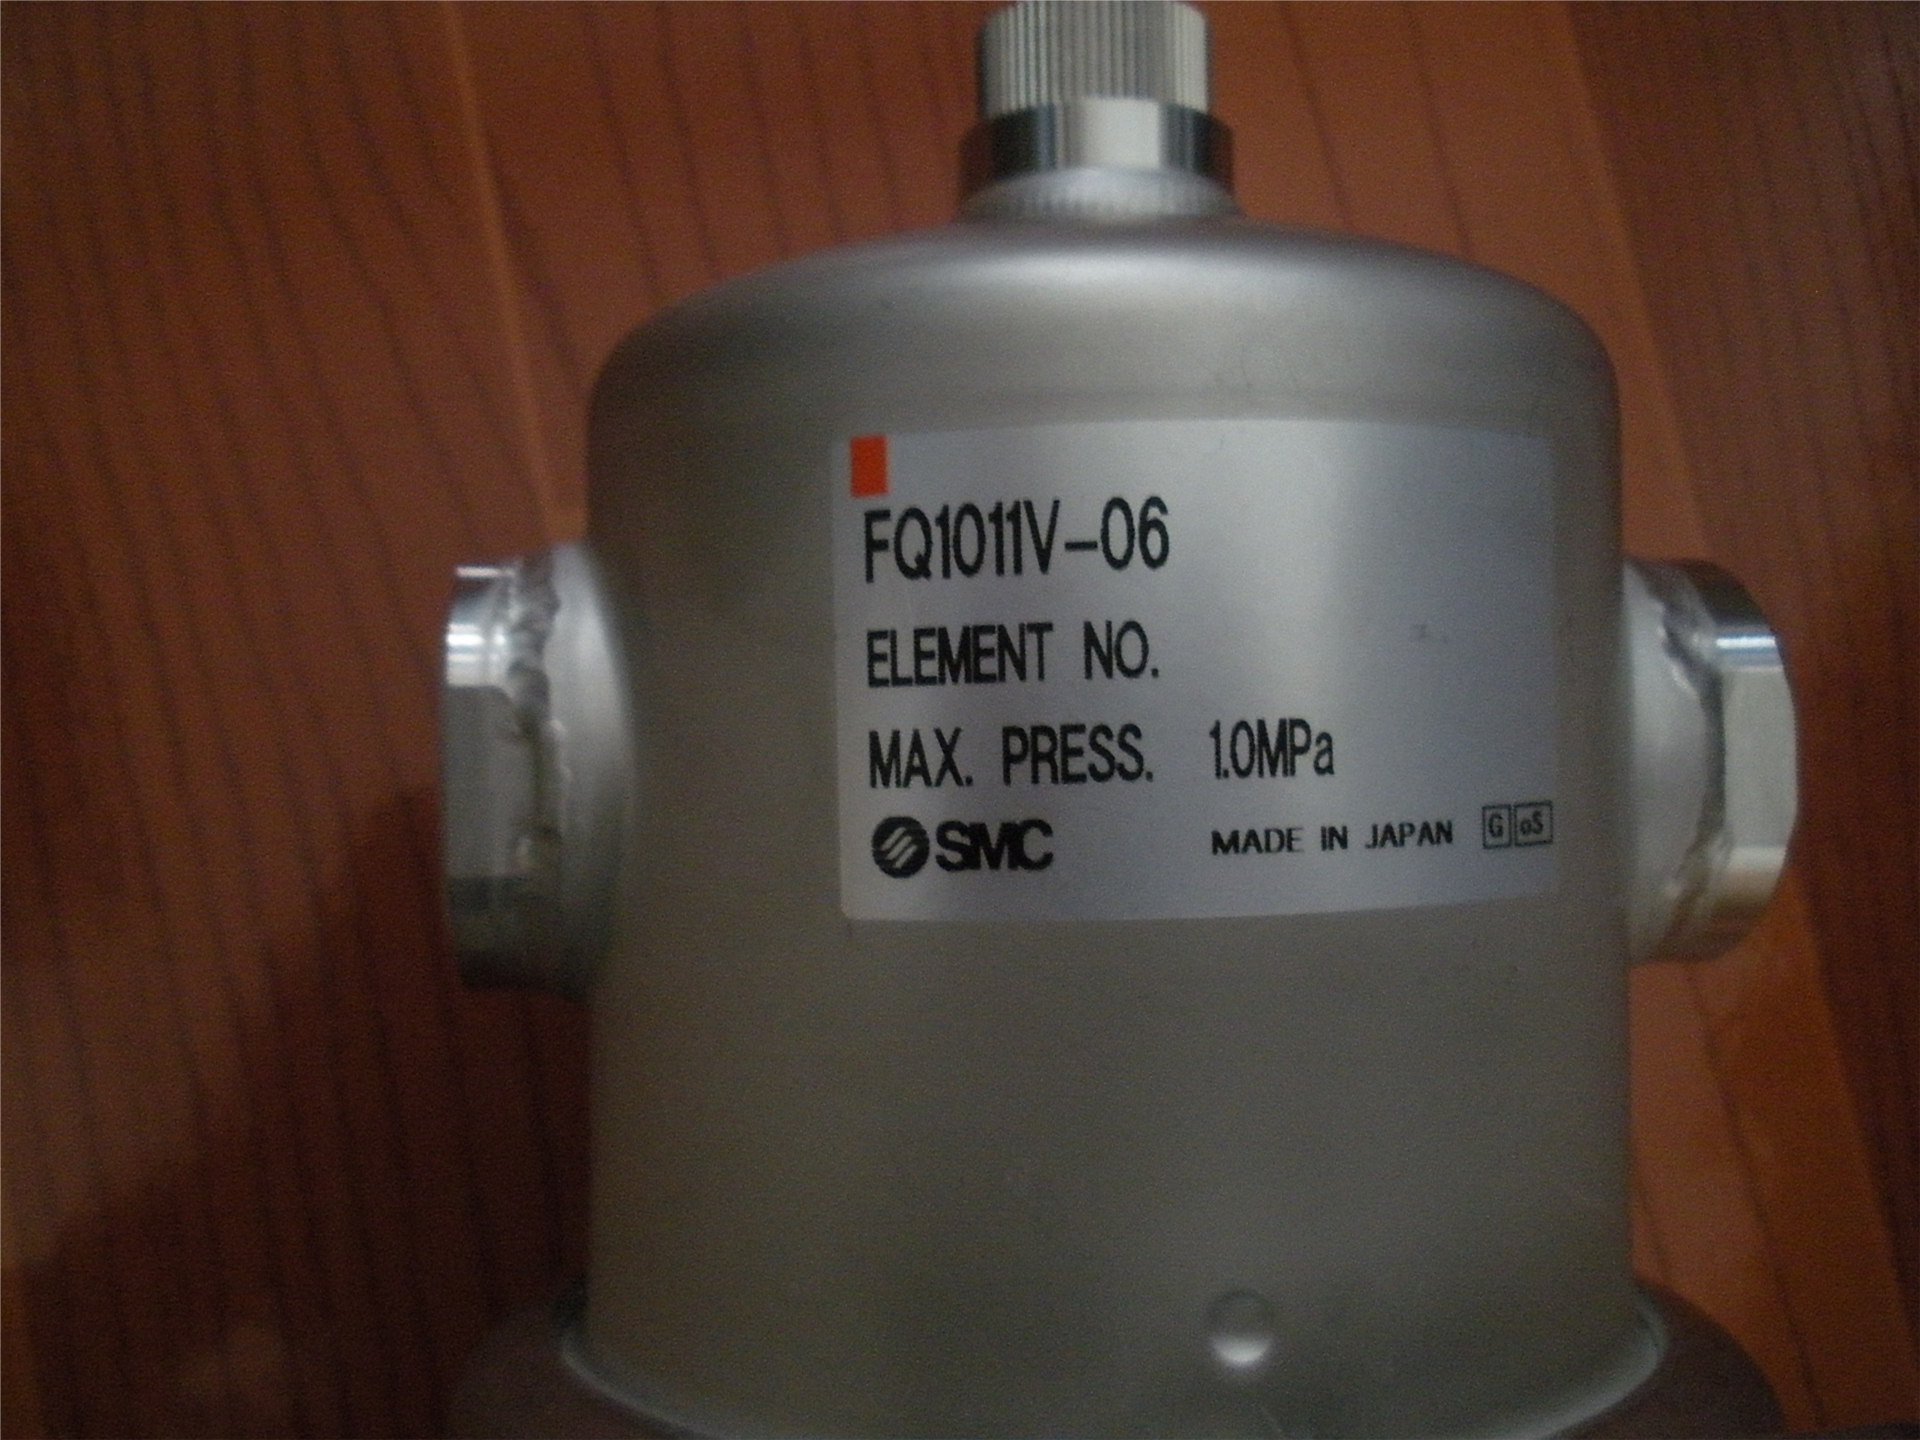 FQ1011V-06